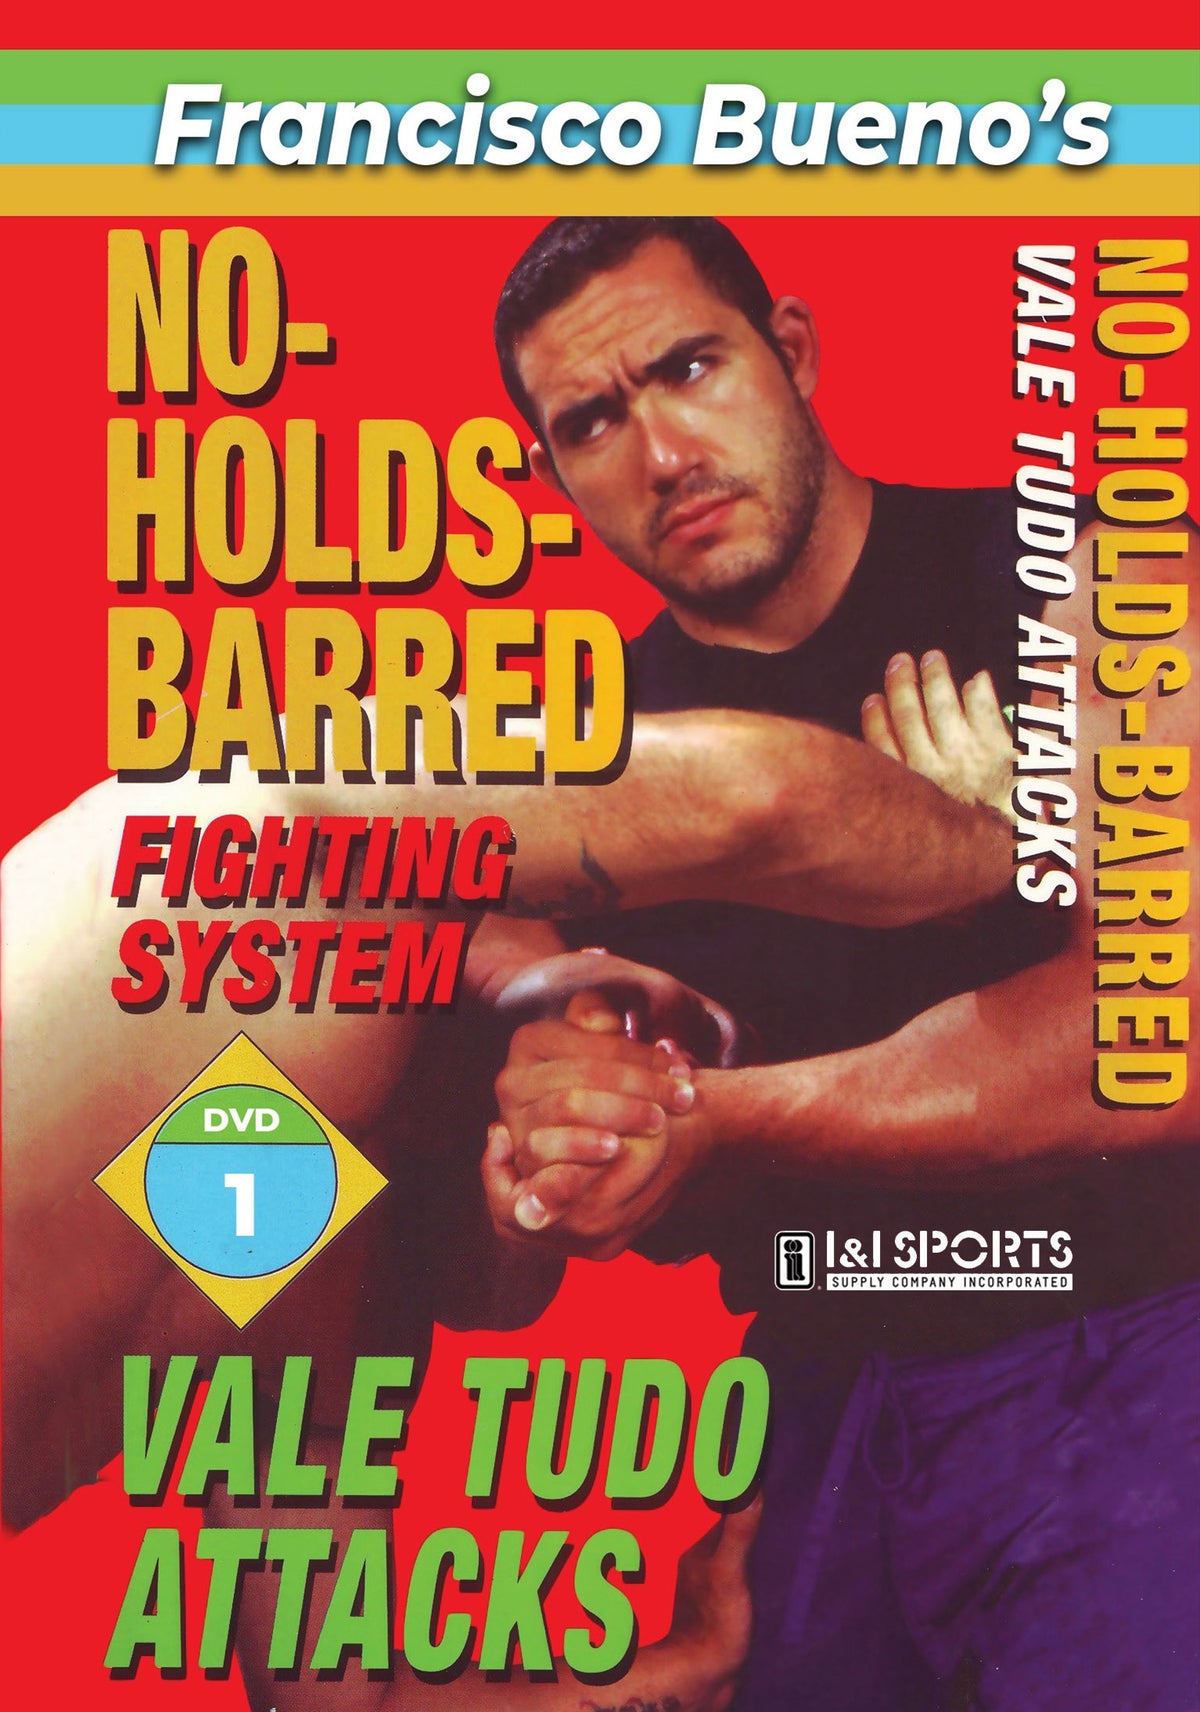 No Holds Barred #1 Vale Tudo Favorite Attack Techniques DVD Francisco Bueno mma